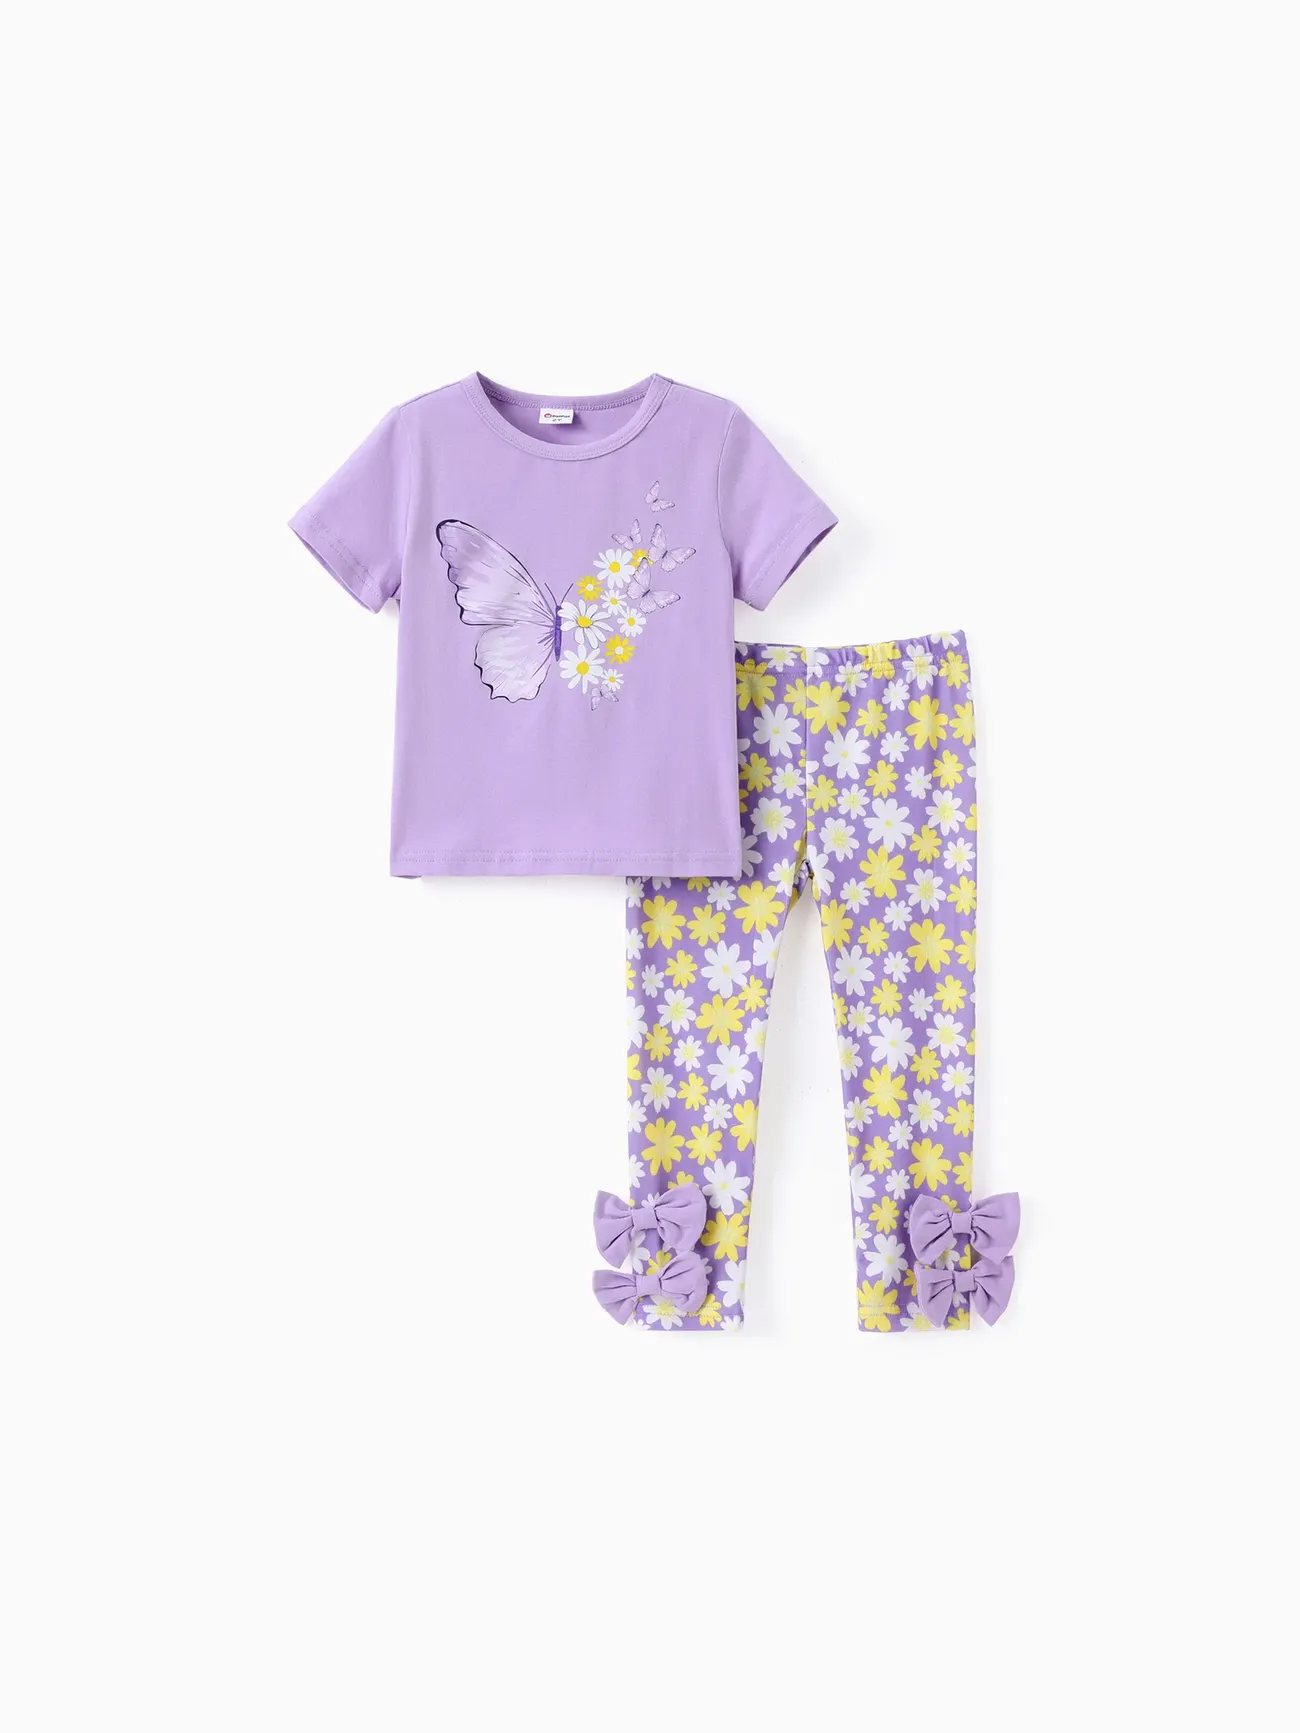 幼兒/小女孩 2 件甜美蝴蝶印花 T 恤和小雛菊緊身褲套裝 紫色 big image 1